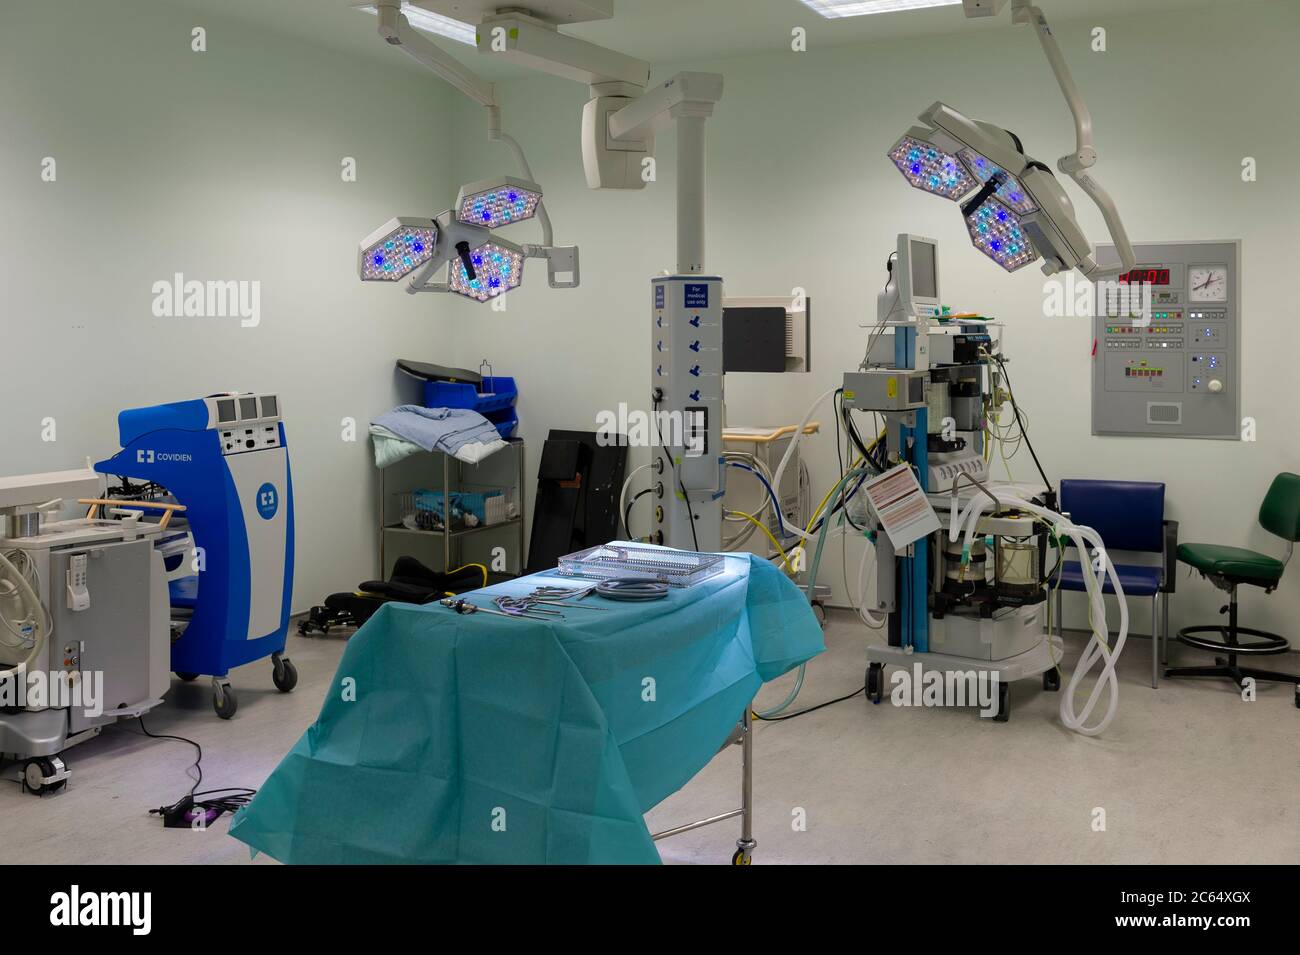 Ein Raum, der für die Vorbereitung von Geräten vor einer Operation in einem Krankenhaus verwendet wird. Leuchten, Maschinen und chirurgische Instrumente werden fertig ausgelegt. Stockfoto